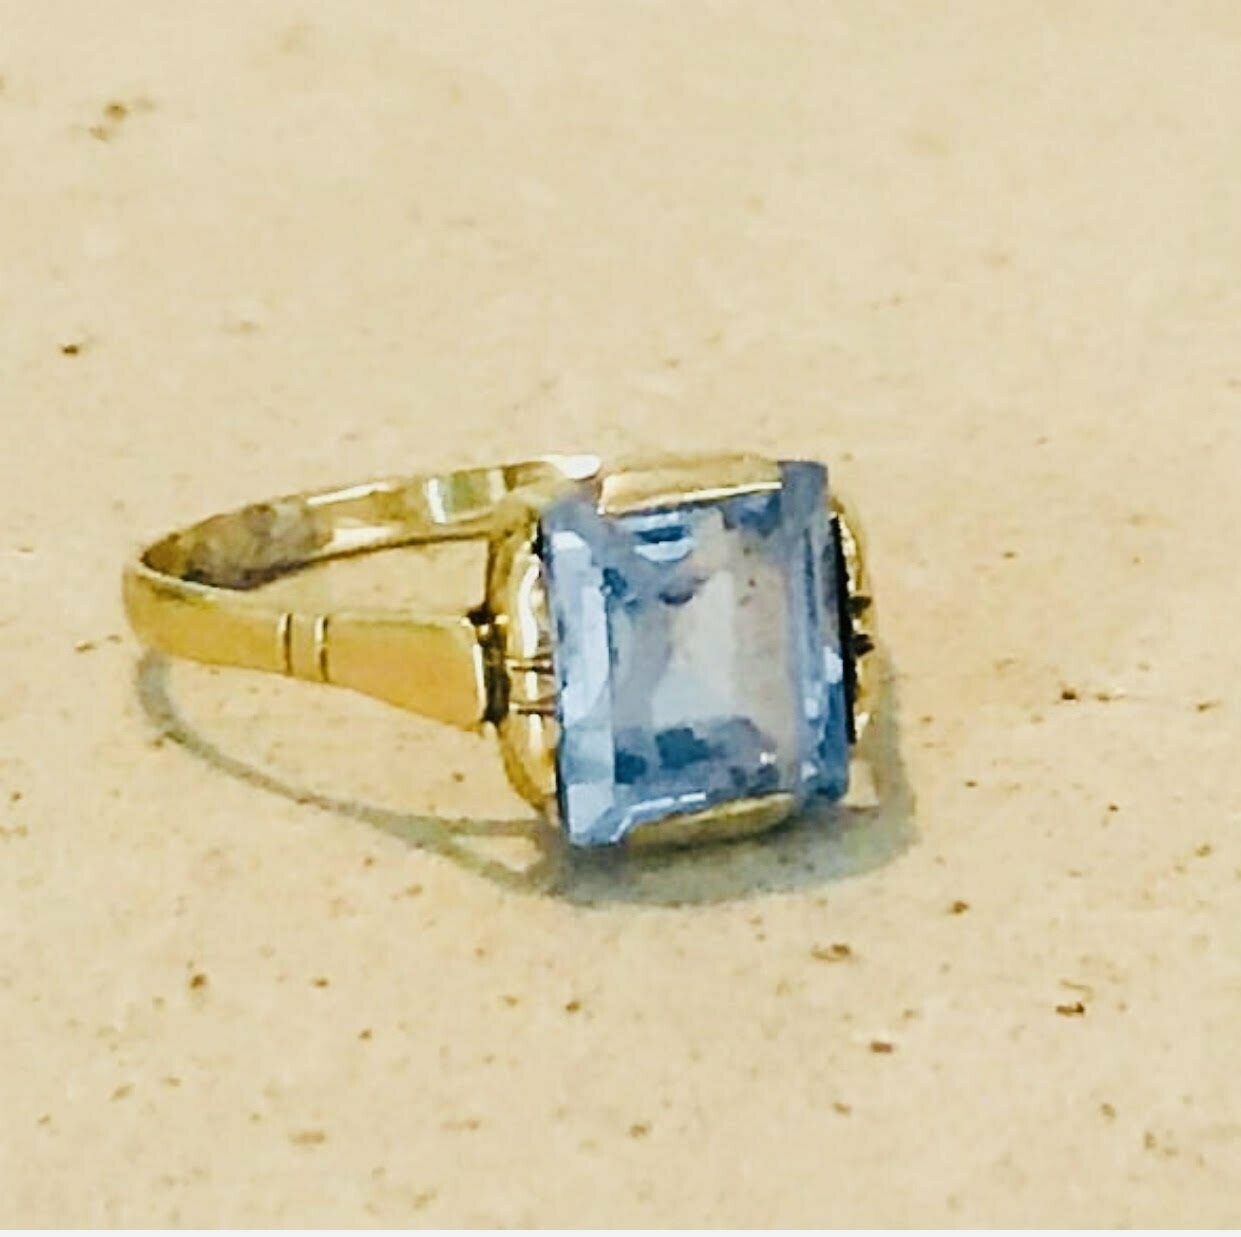 14 carat golden ring with aquamarine -1960